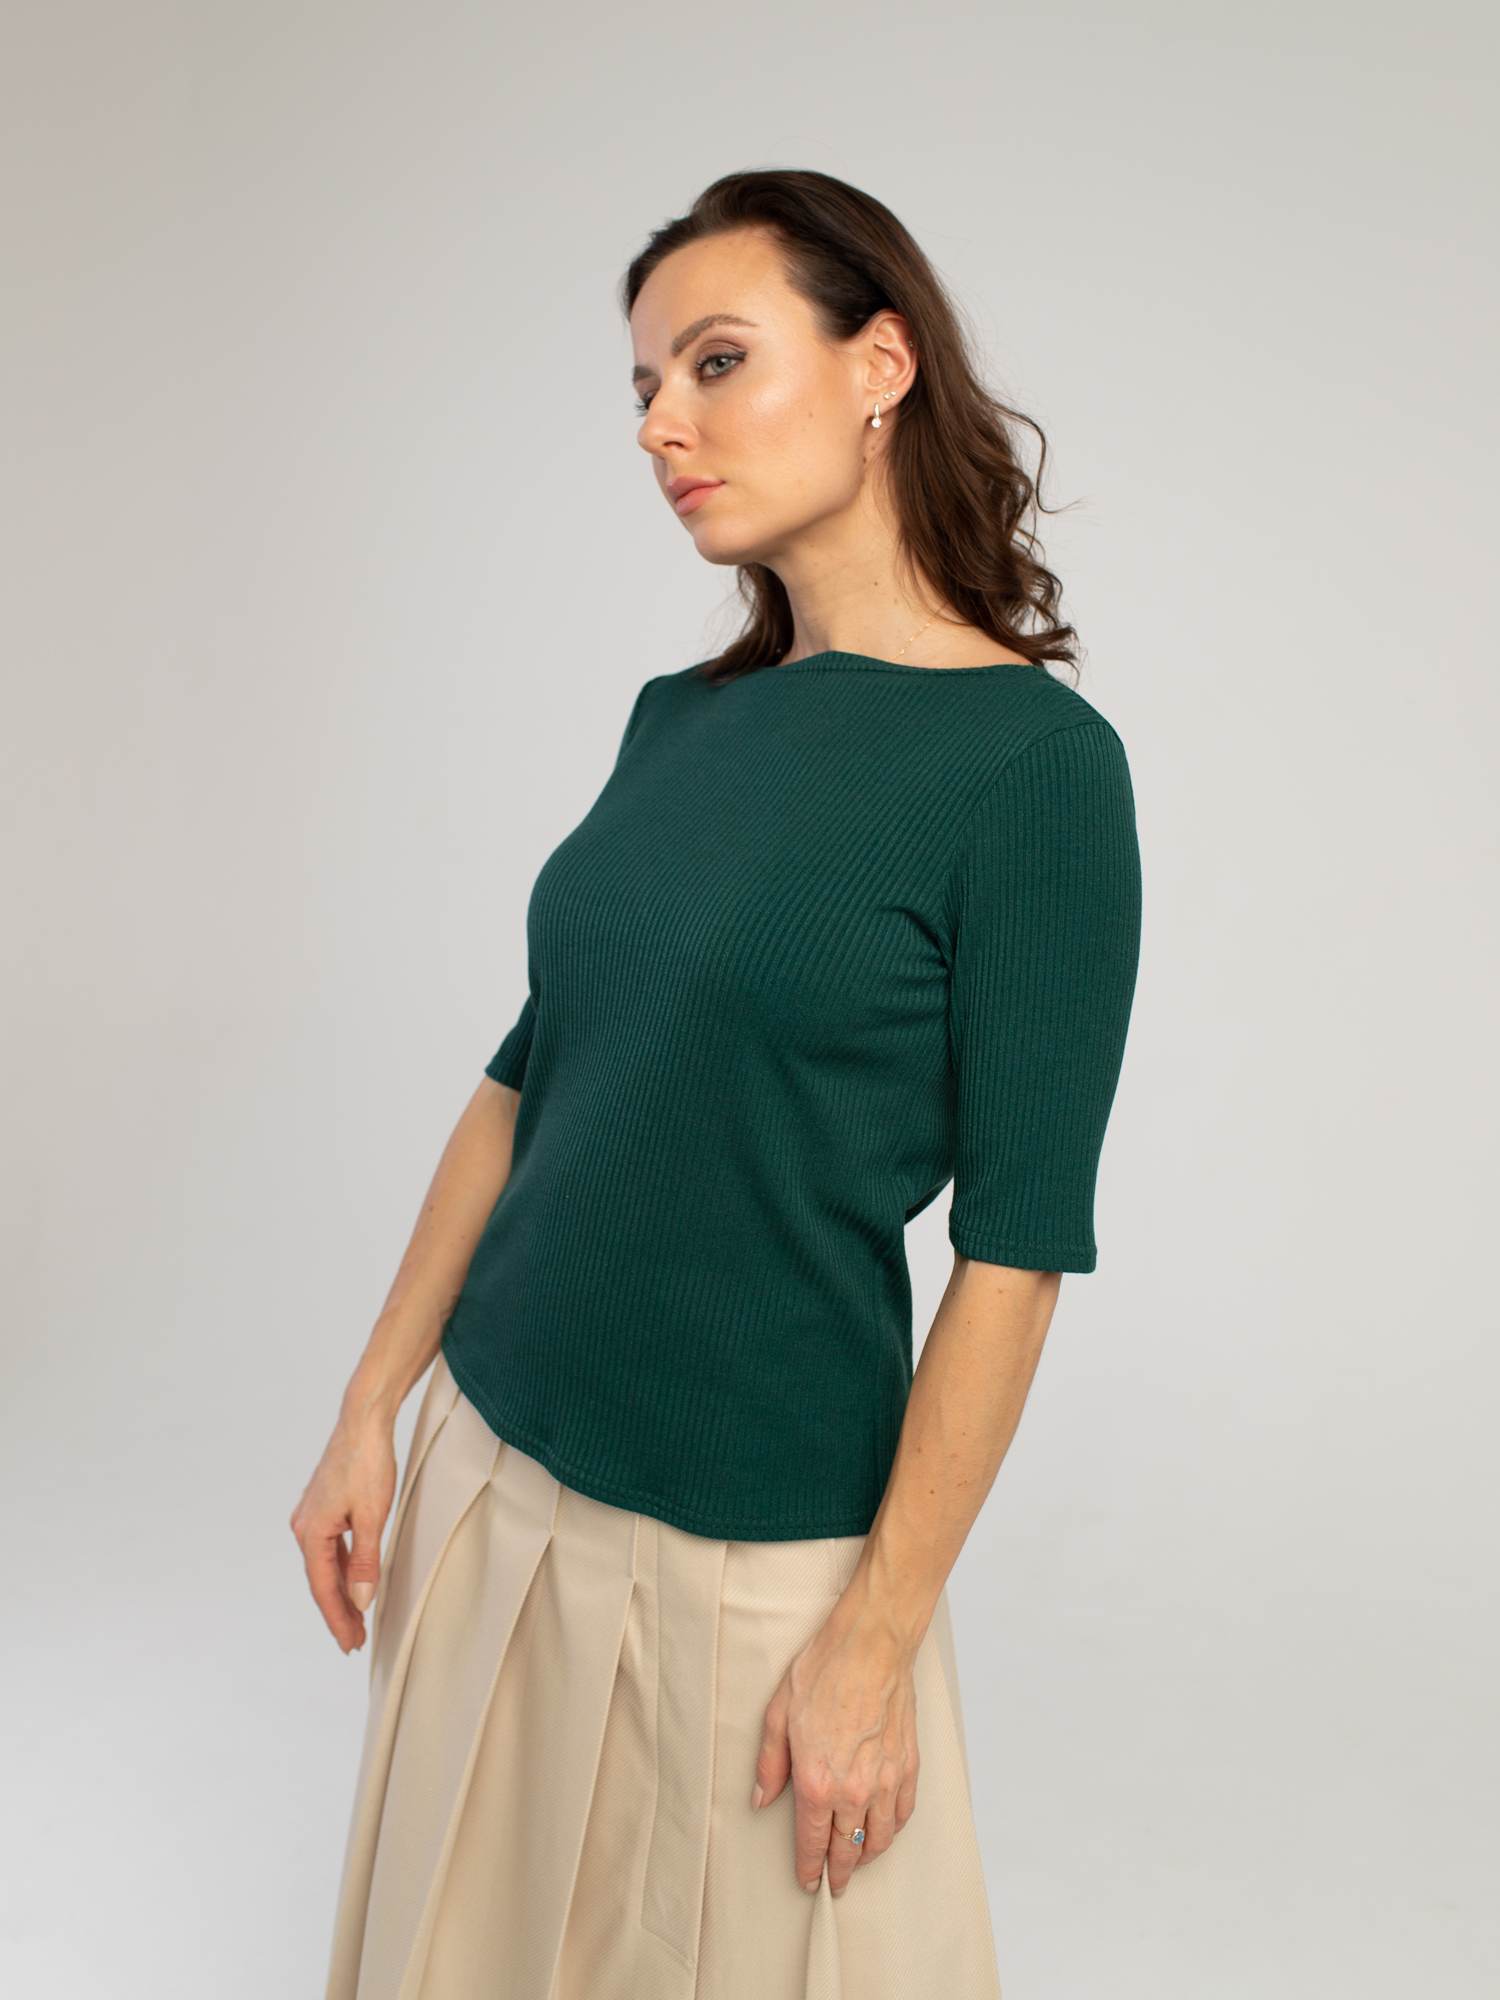 Женская одежда, топ, артикул: 038-0460, Цвет: зеленый,  Фабрика Трика, фото №1